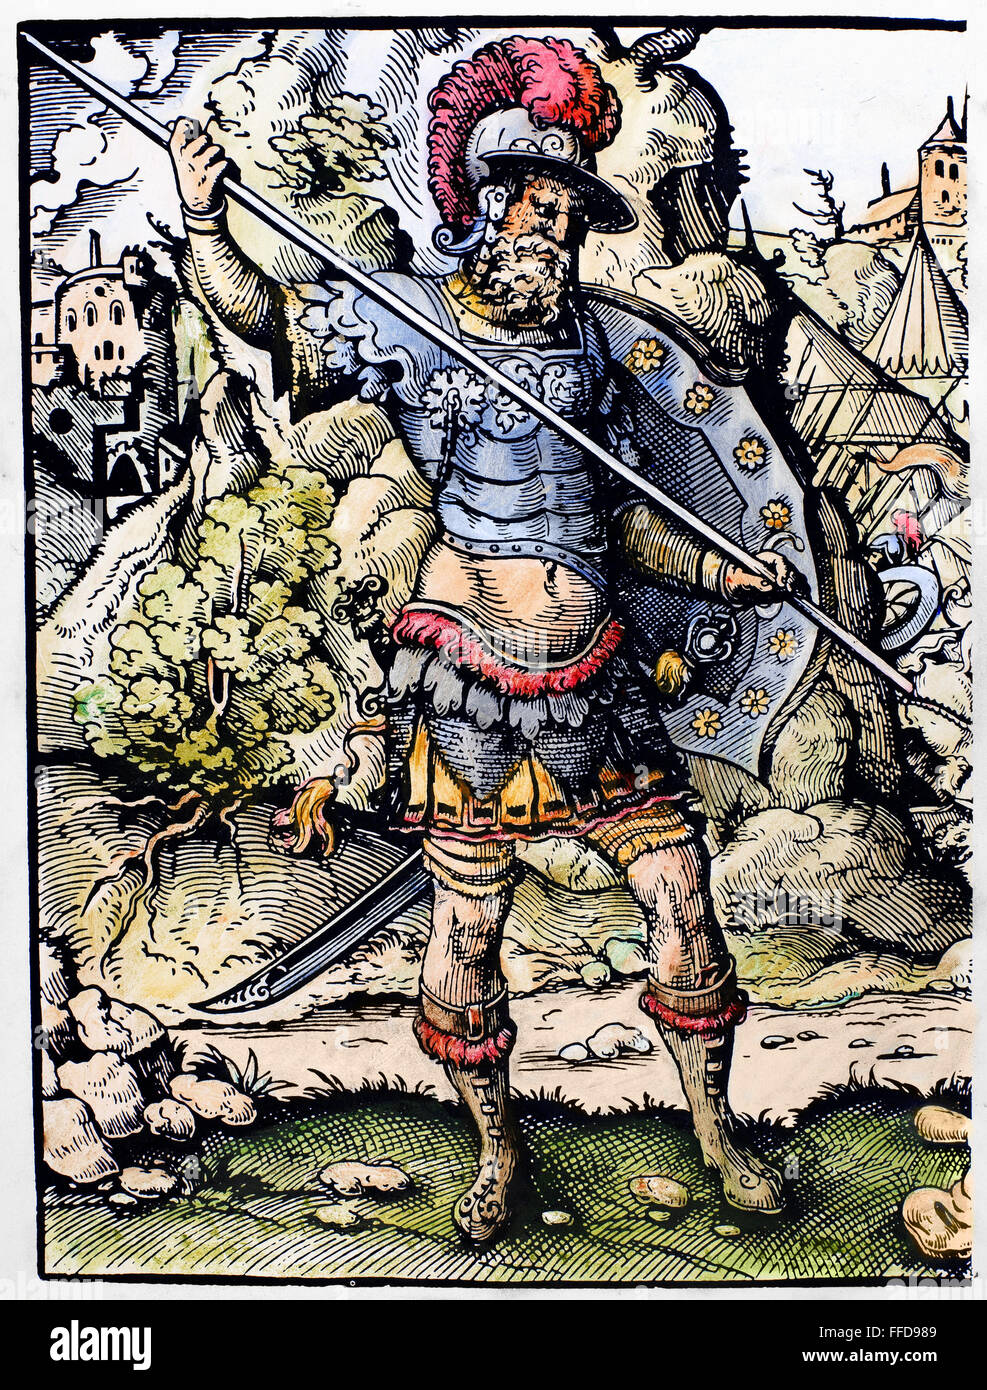 DAVID UND GOLIATH. / nGoliath, die Philister Krieger, bereitet sich zum Kampf gegen David zu tun (1 Samuel 17: 42-44). Holzschnitt, 16. Jahrhundert von Jost Amman. Stockfoto